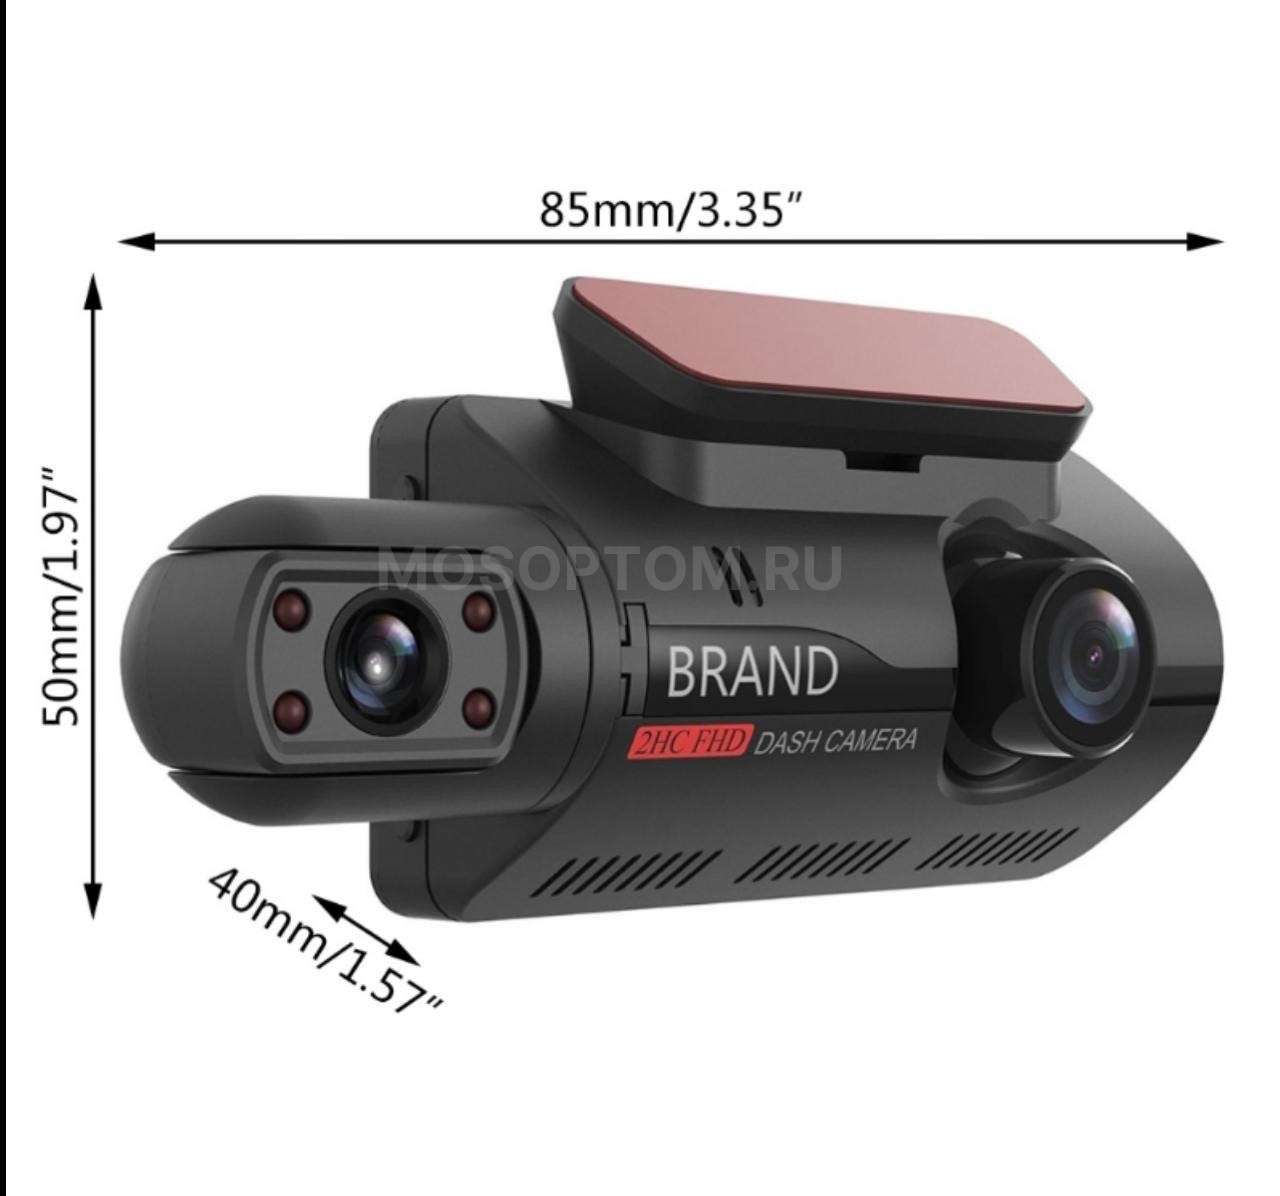 Автомобильный видеорегистратор BlackBOX DVR A68 Dual Lens, 2 камеры, Full HD 1080 оптом - Фото №5